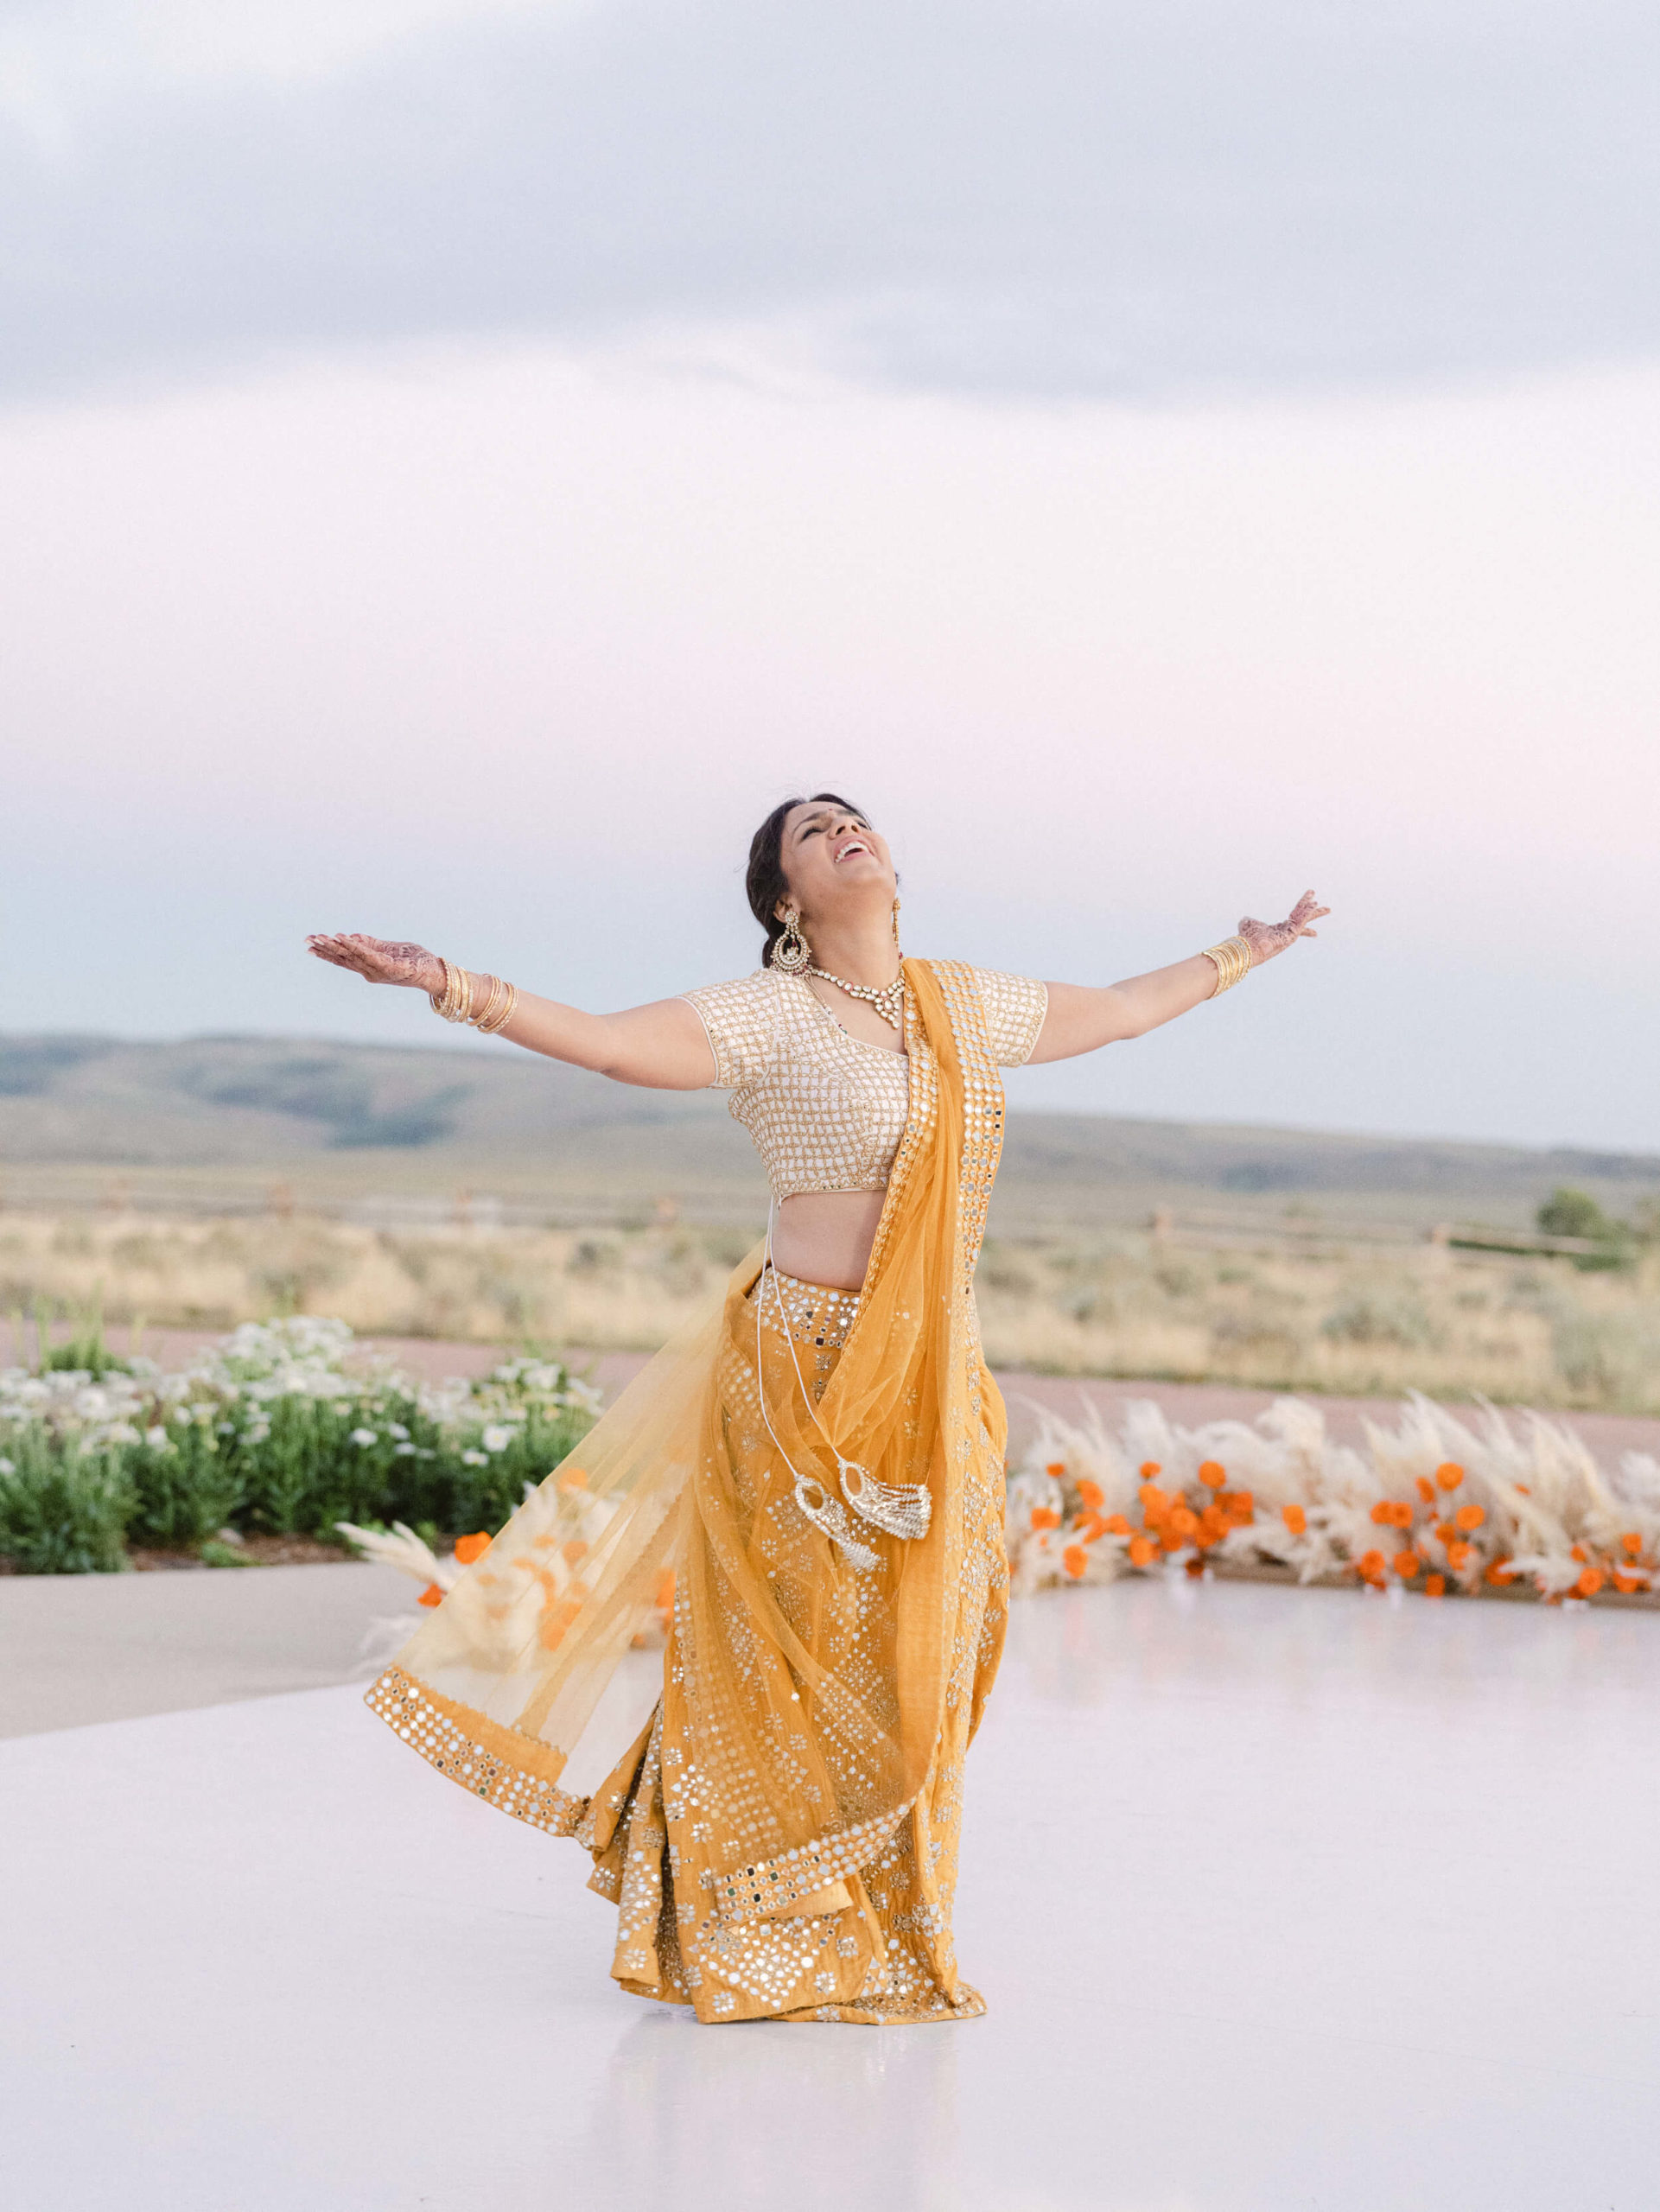 Sapna dancing in sari